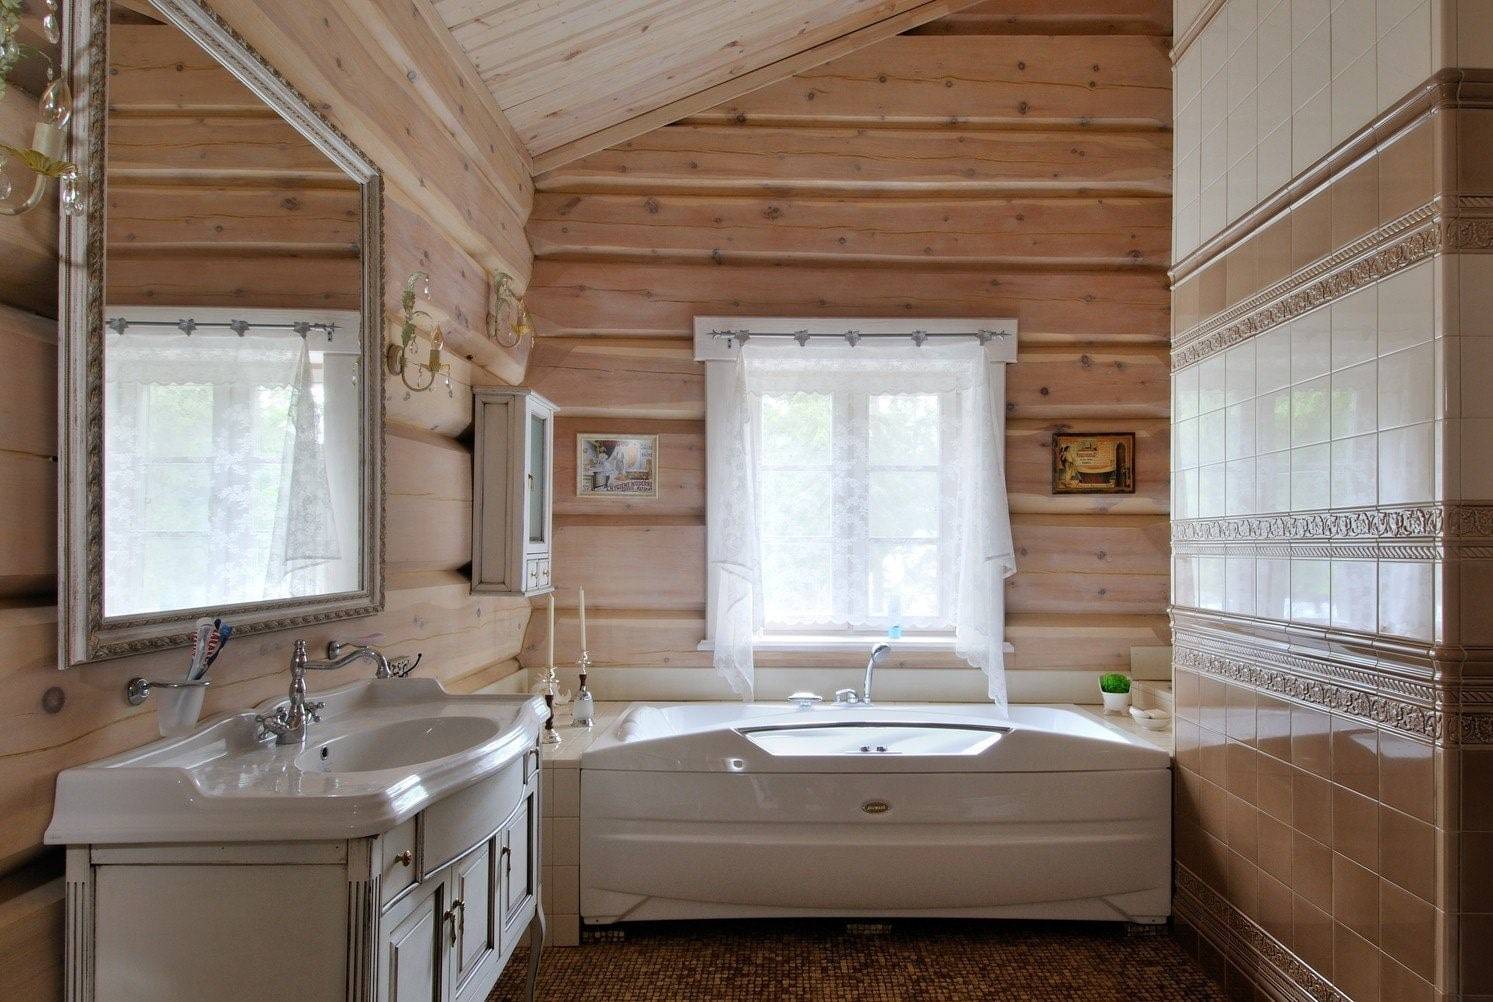 Ванная комната на даче: отделка, обустройство и варианты дизайна. ванна на даче (35 фото): способы обустройства и отделки